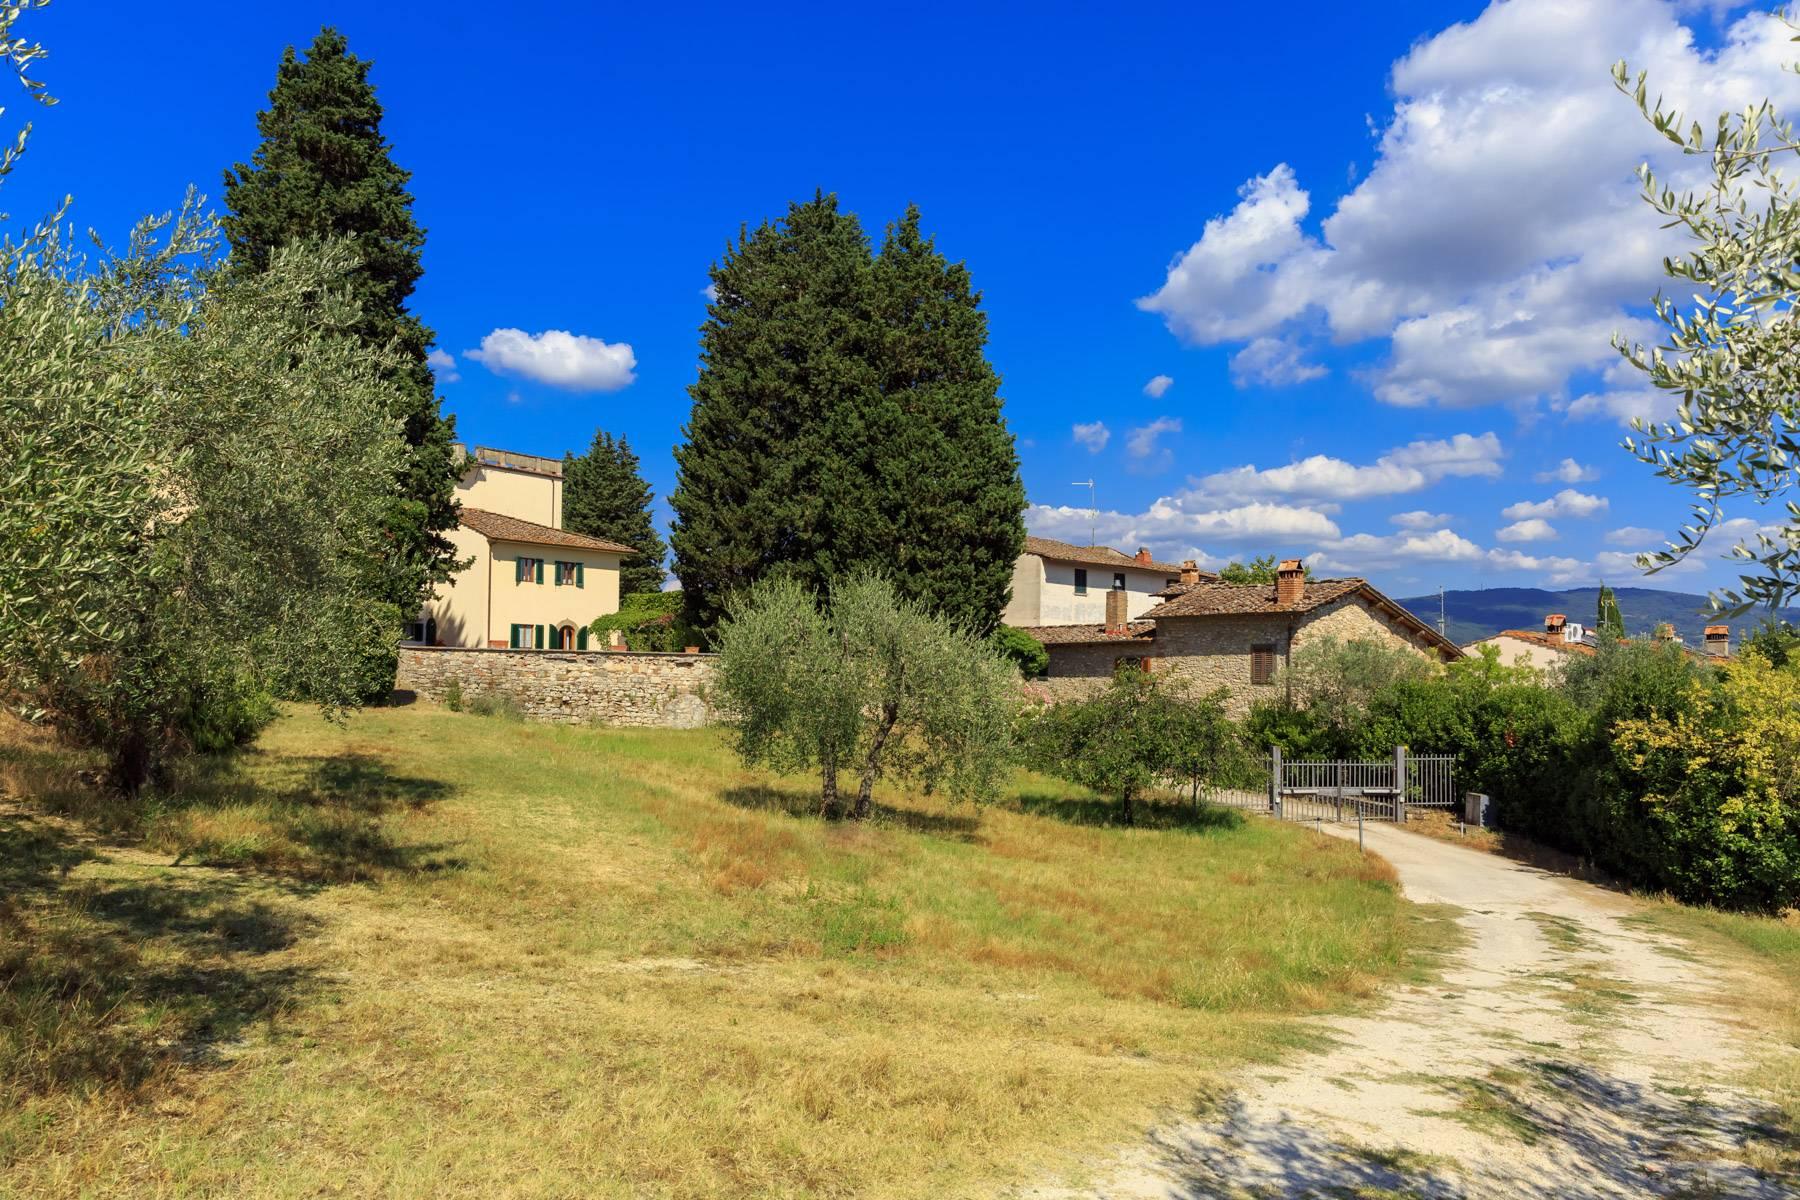 Grande villa antica con oliveto a 10 minuti da Firenze - 7